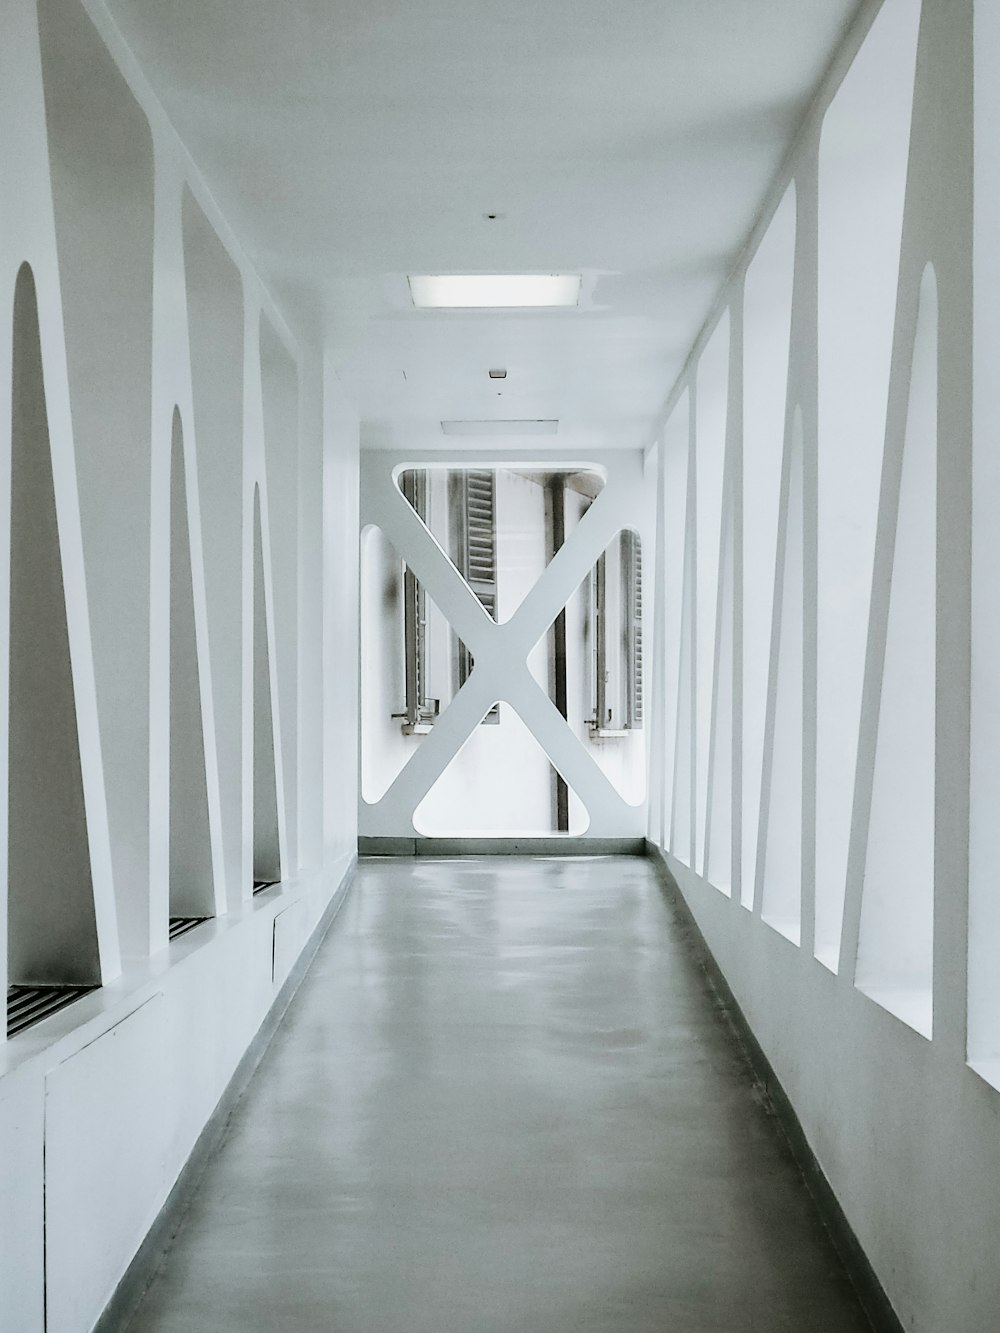 Couloir de l’immeuble peint en blanc